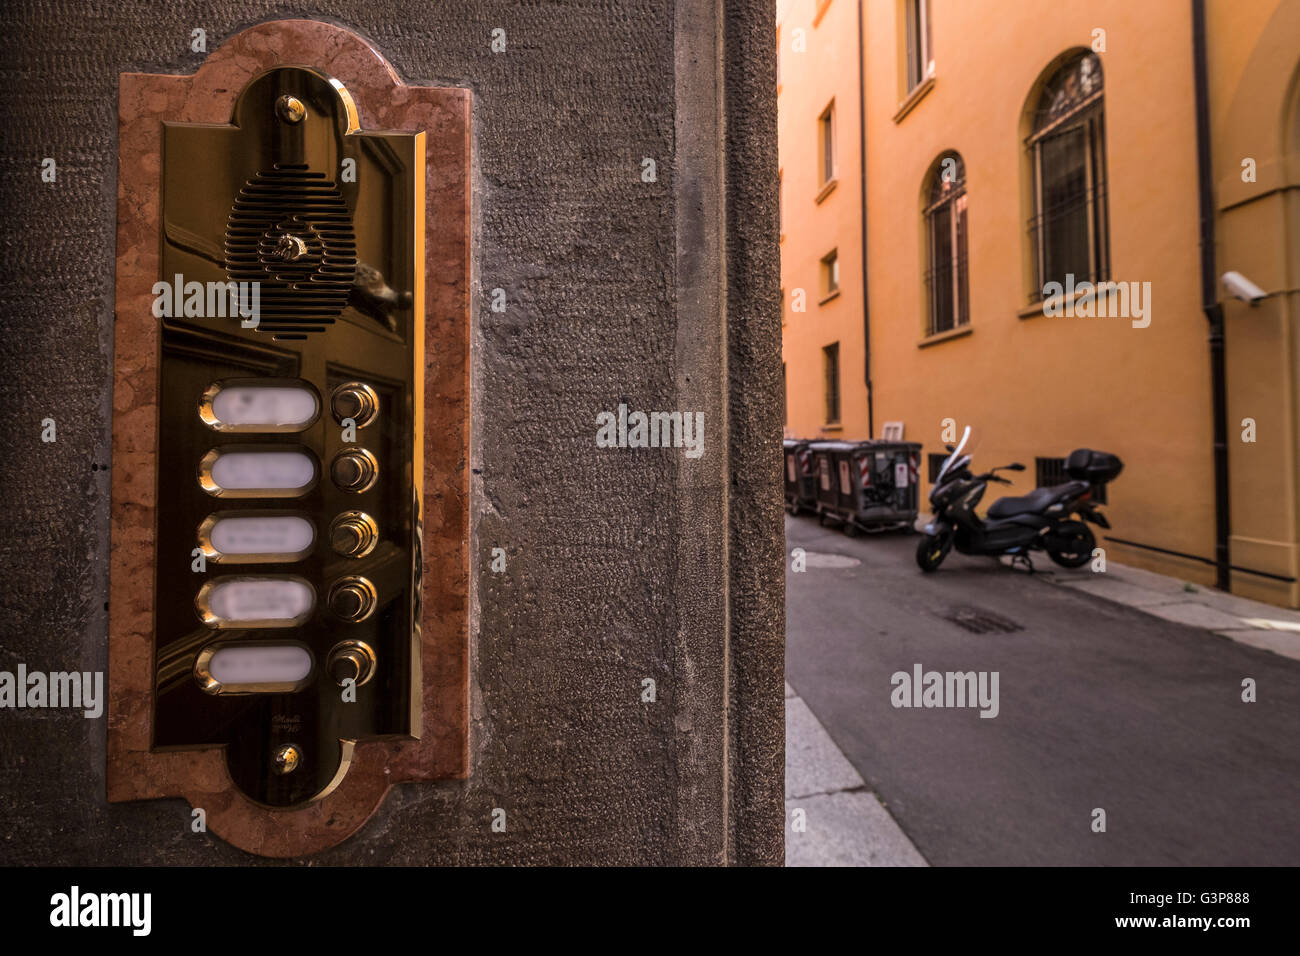 Hochglanz polierte glänzende Messing Klingel Gegensprechanlage an Haustür Mehrfamilienhauses in Bologna, Italien, mit Namen verwischt. Stockfoto